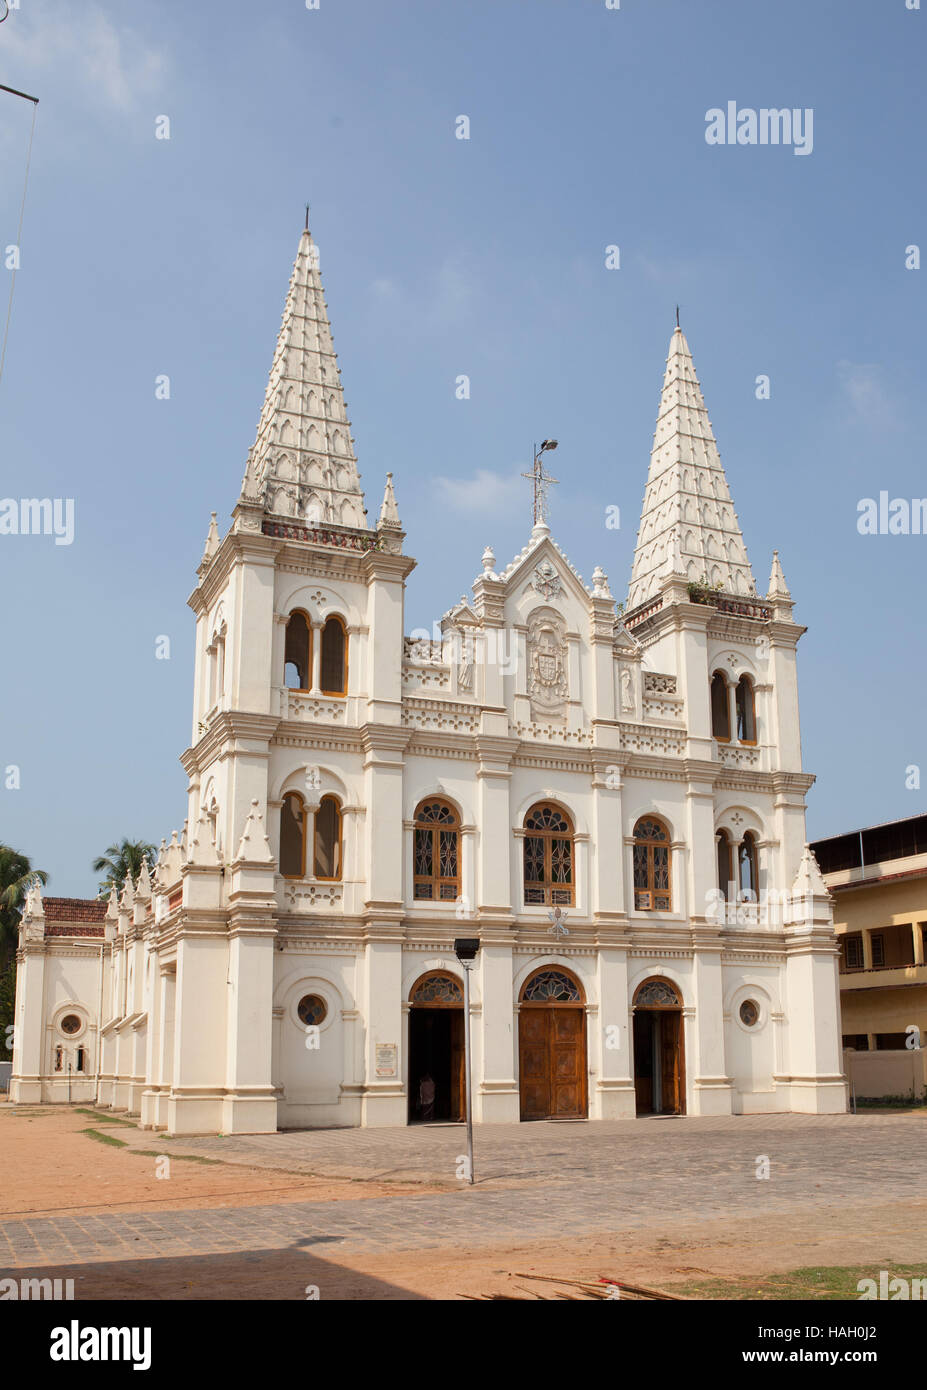 The Santa Cruz Cathedral Basilica at Fort Kochi,Cochin, India, Stock Photo